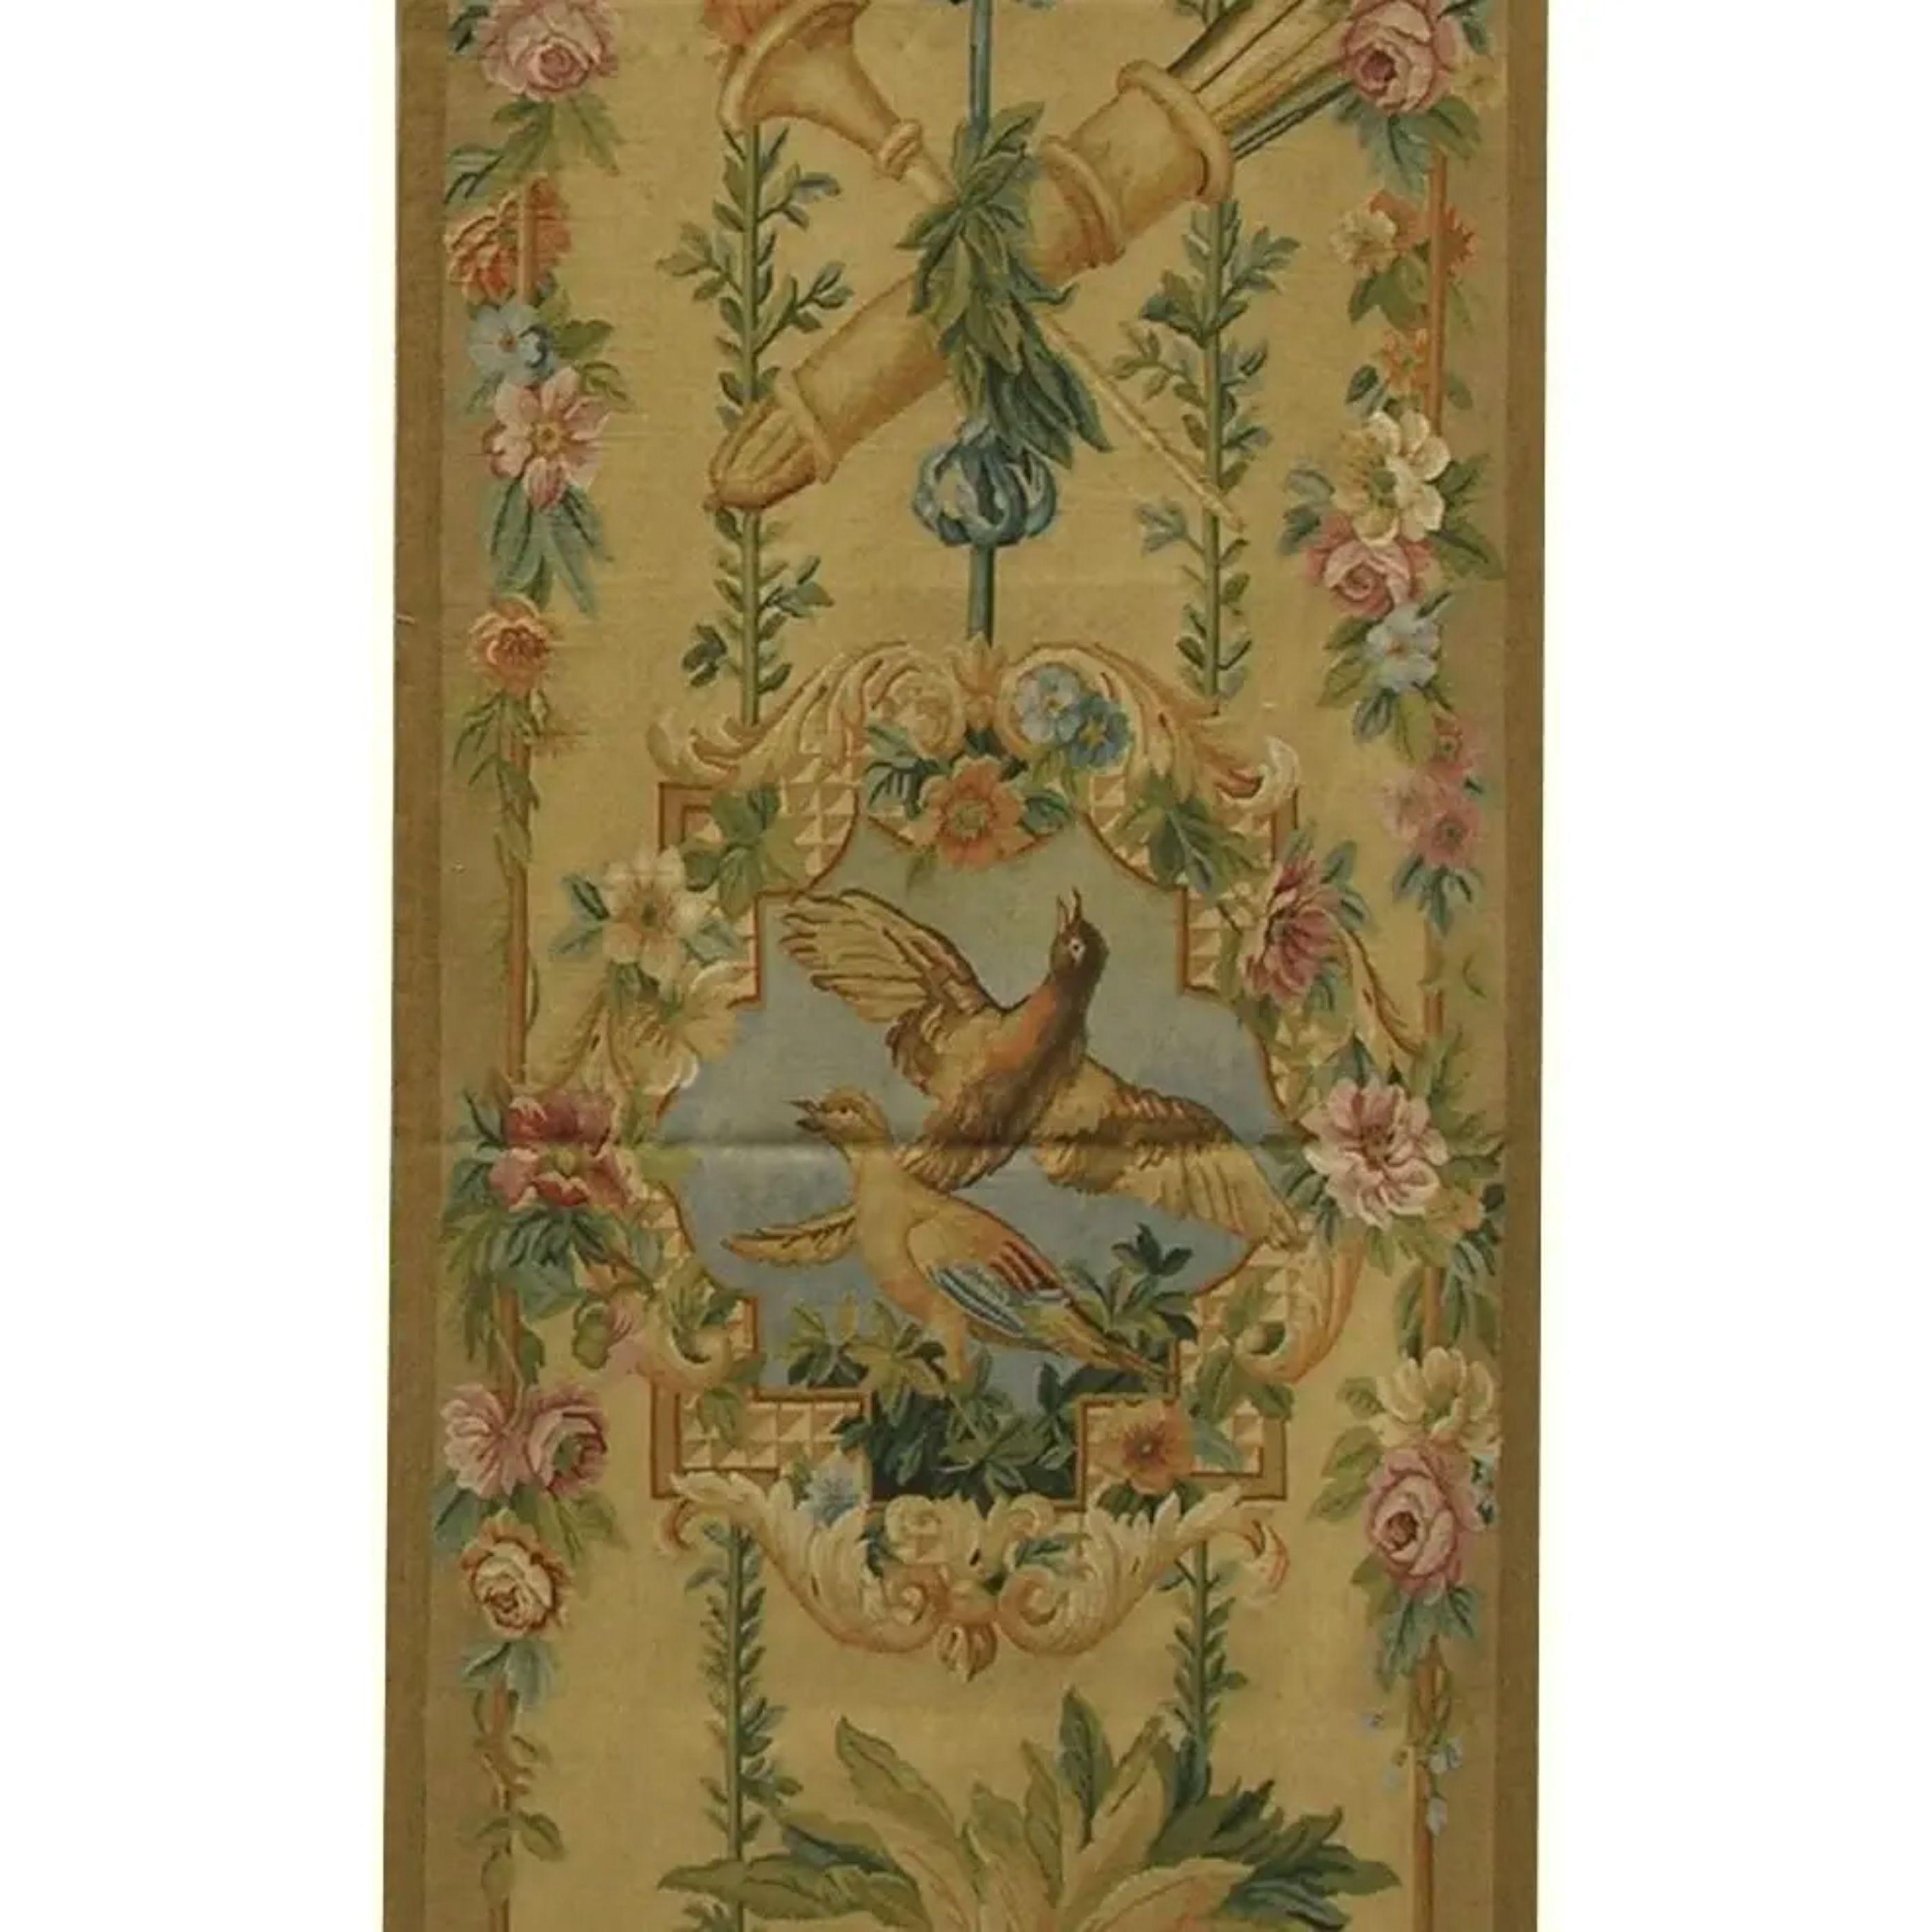 Ein Wandteppich ist, einfach ausgedrückt, ein Textil, das speziell entworfen und gewebt wurde, um eine künstlerische Szene darzustellen, die an einer Wand aufgehängt werden soll. Antike Wandteppiche, die vor mehr als 100 Jahren gewebt wurden, sind